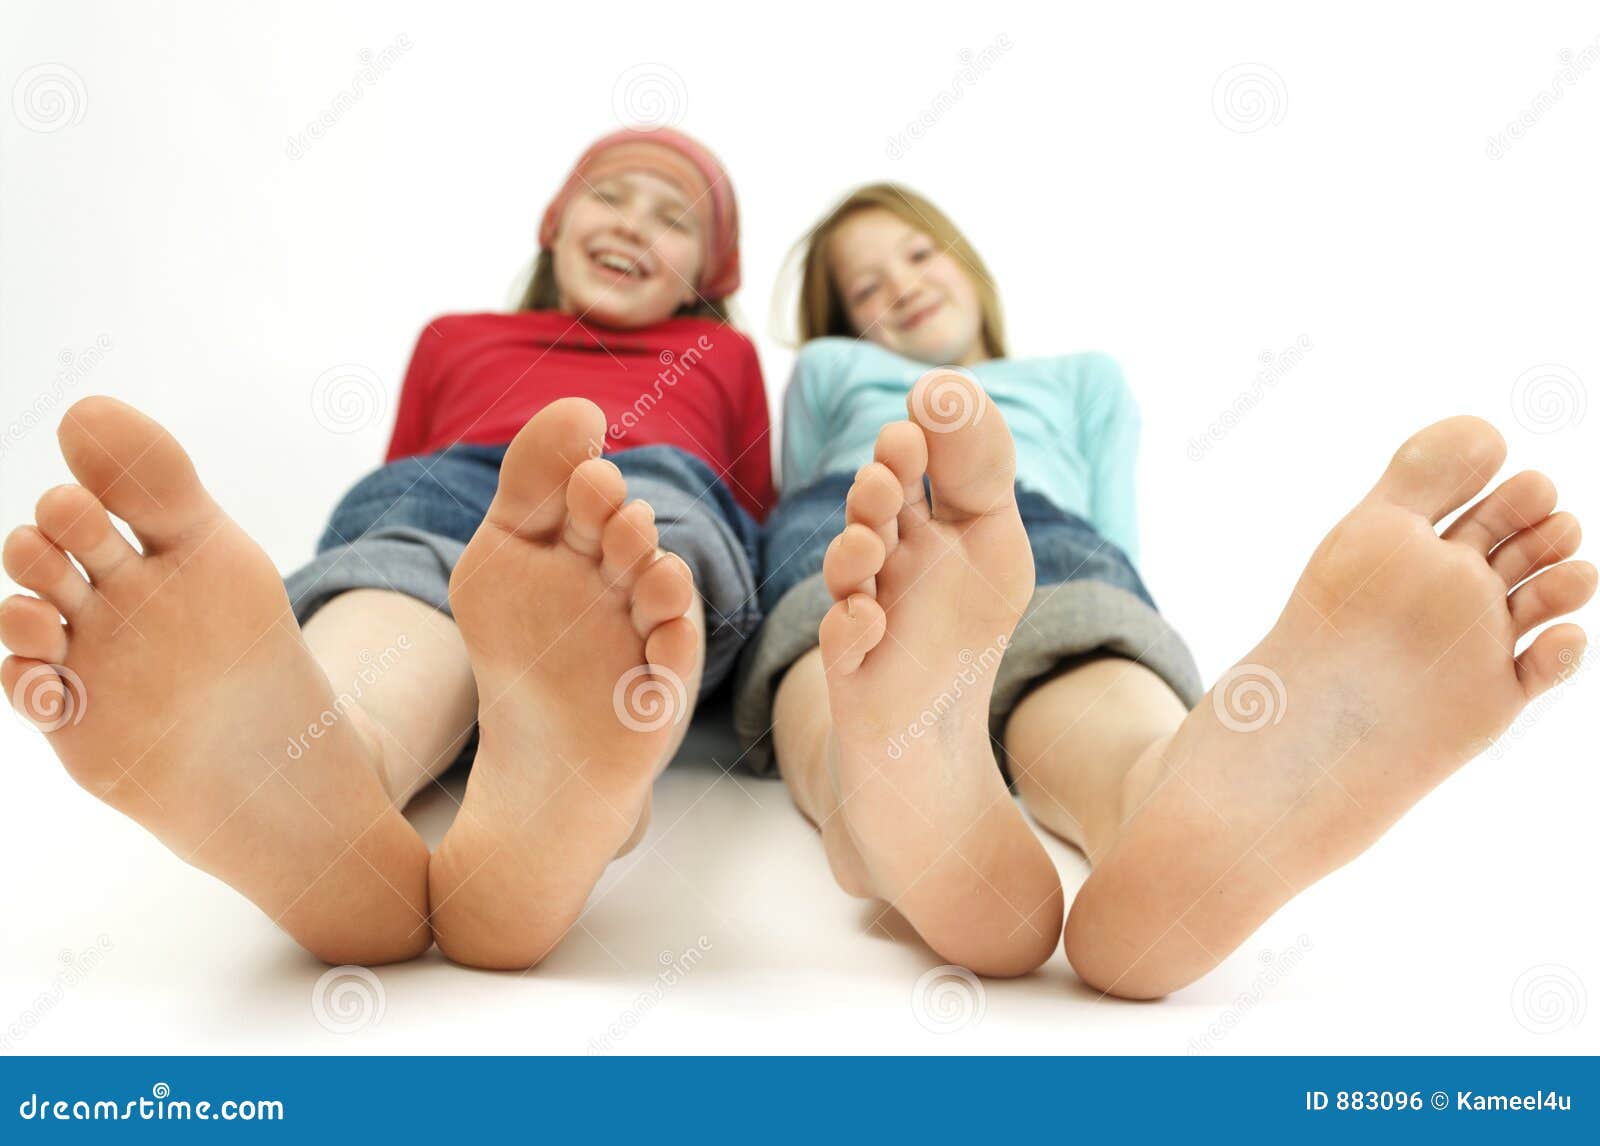 Sexy teens feets